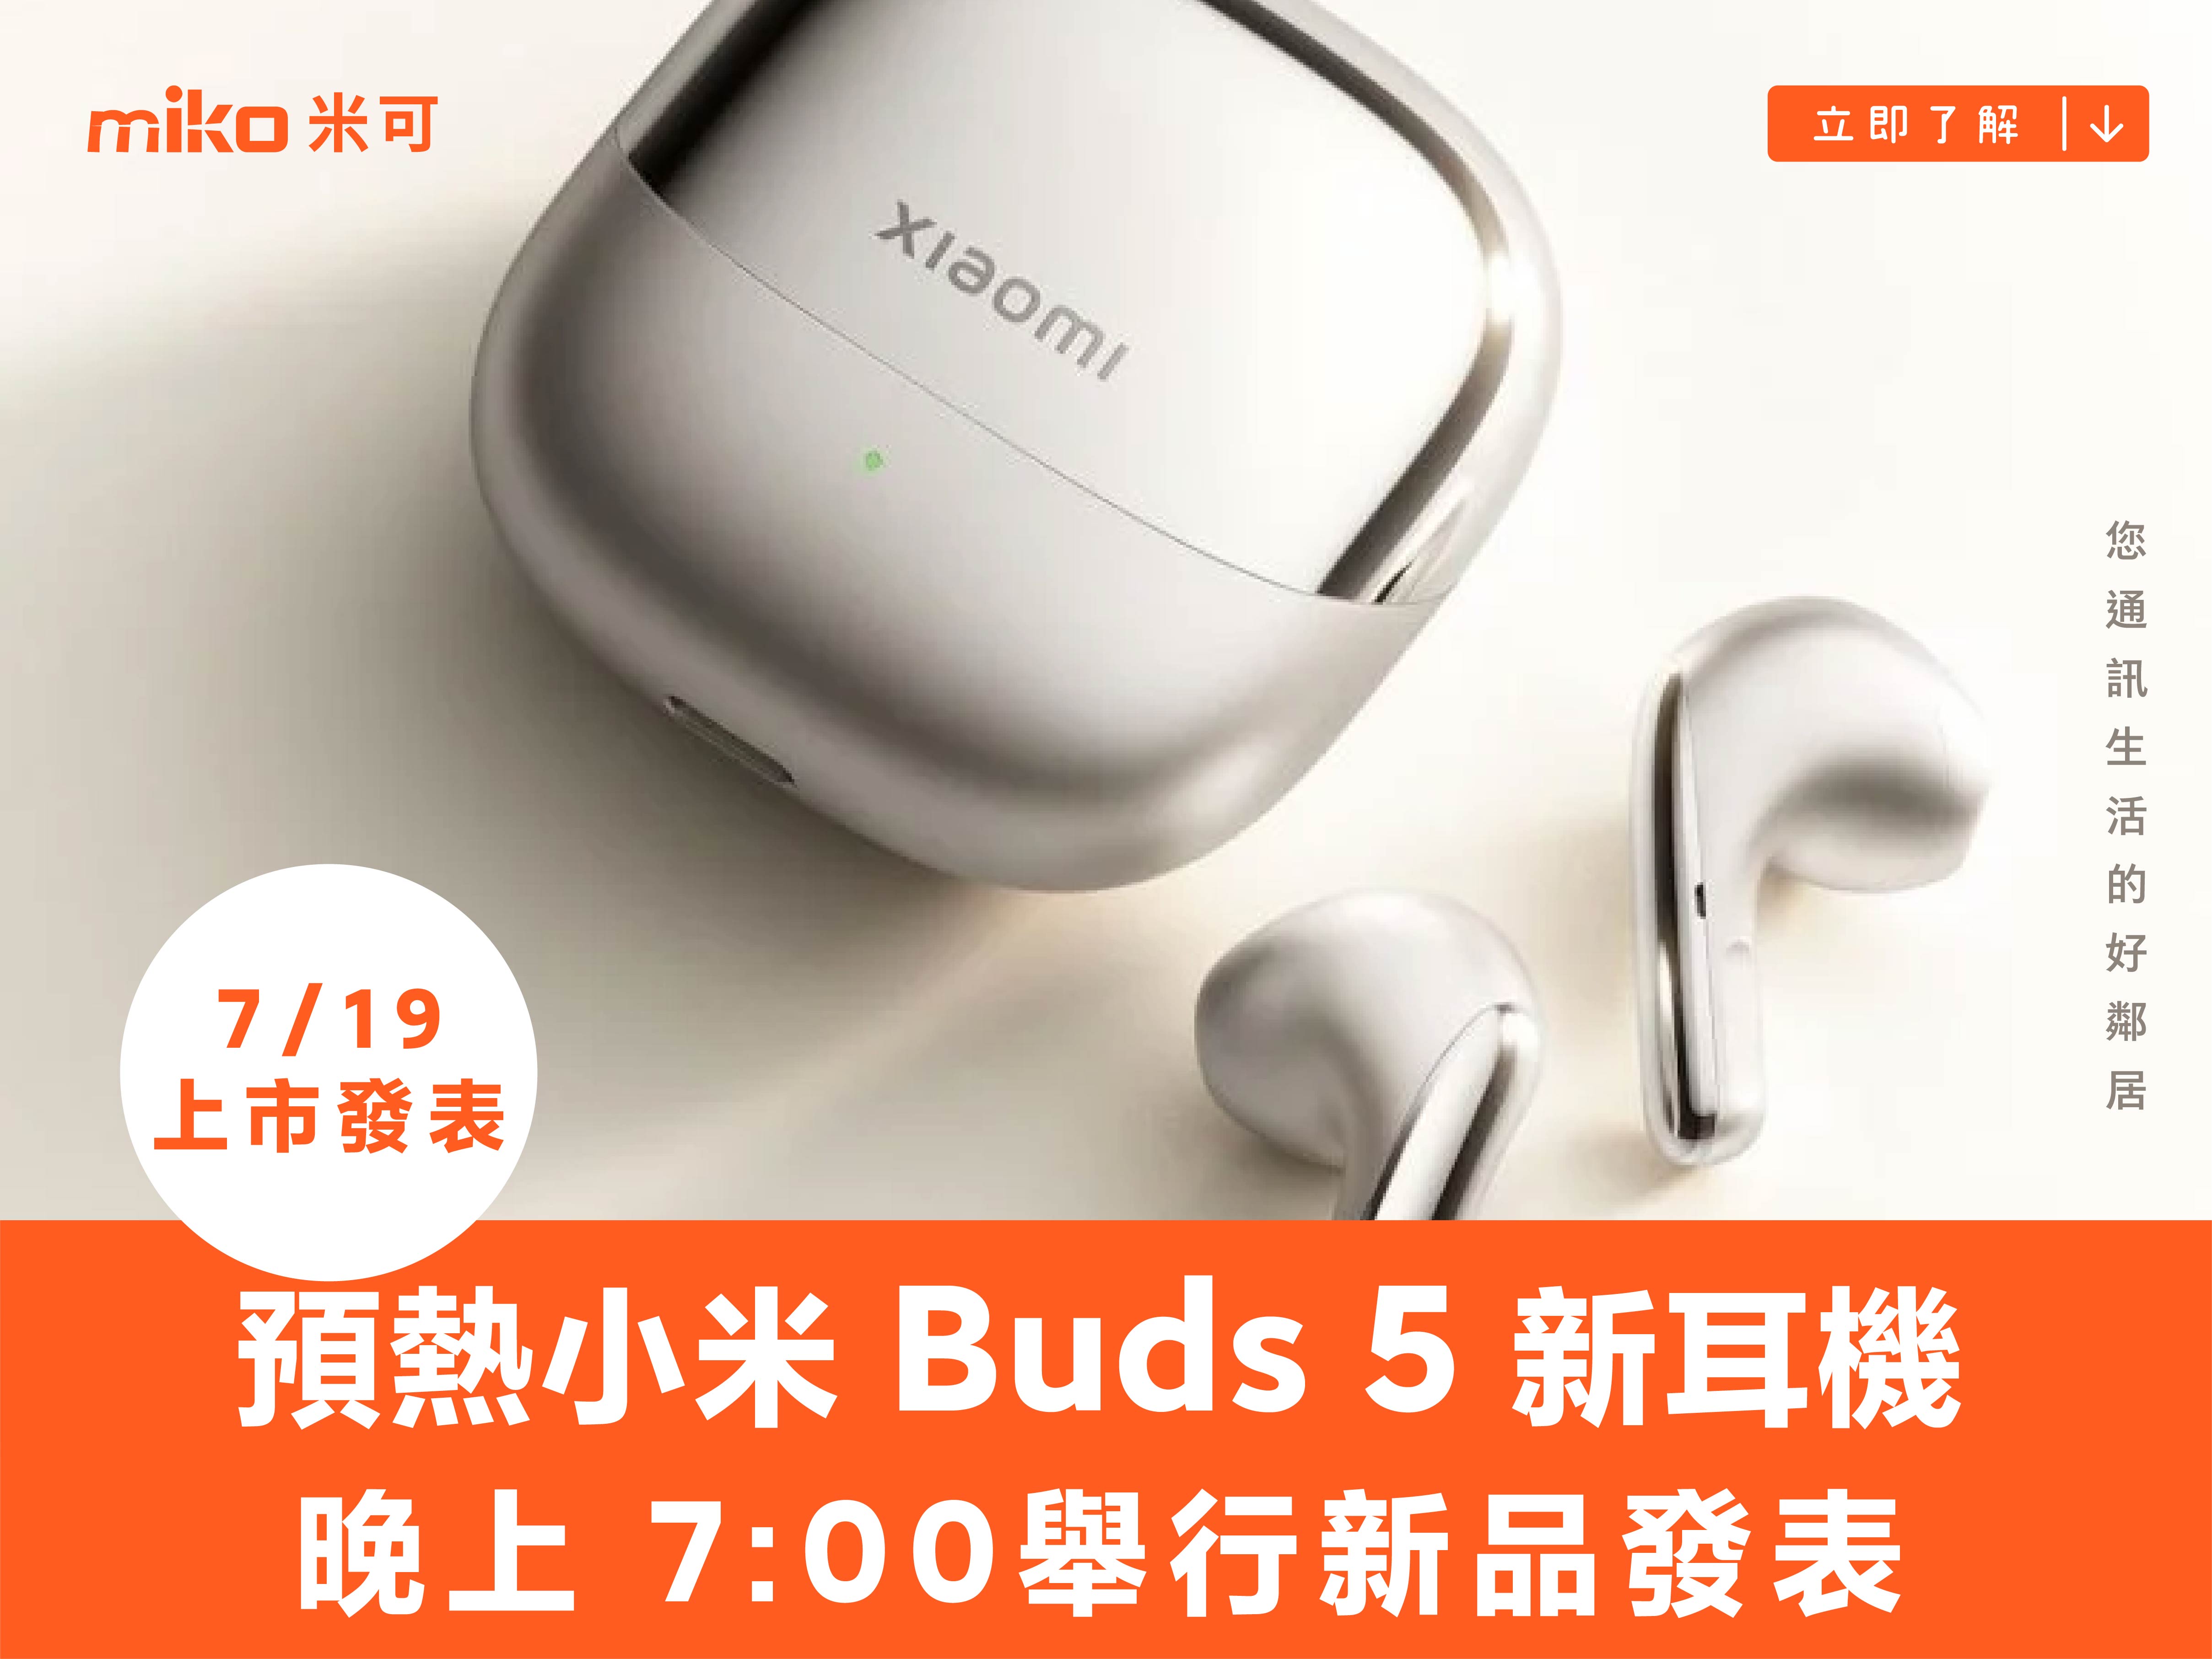 官方正式預熱小米 Buds 5 新耳機，將於 7月19日發表